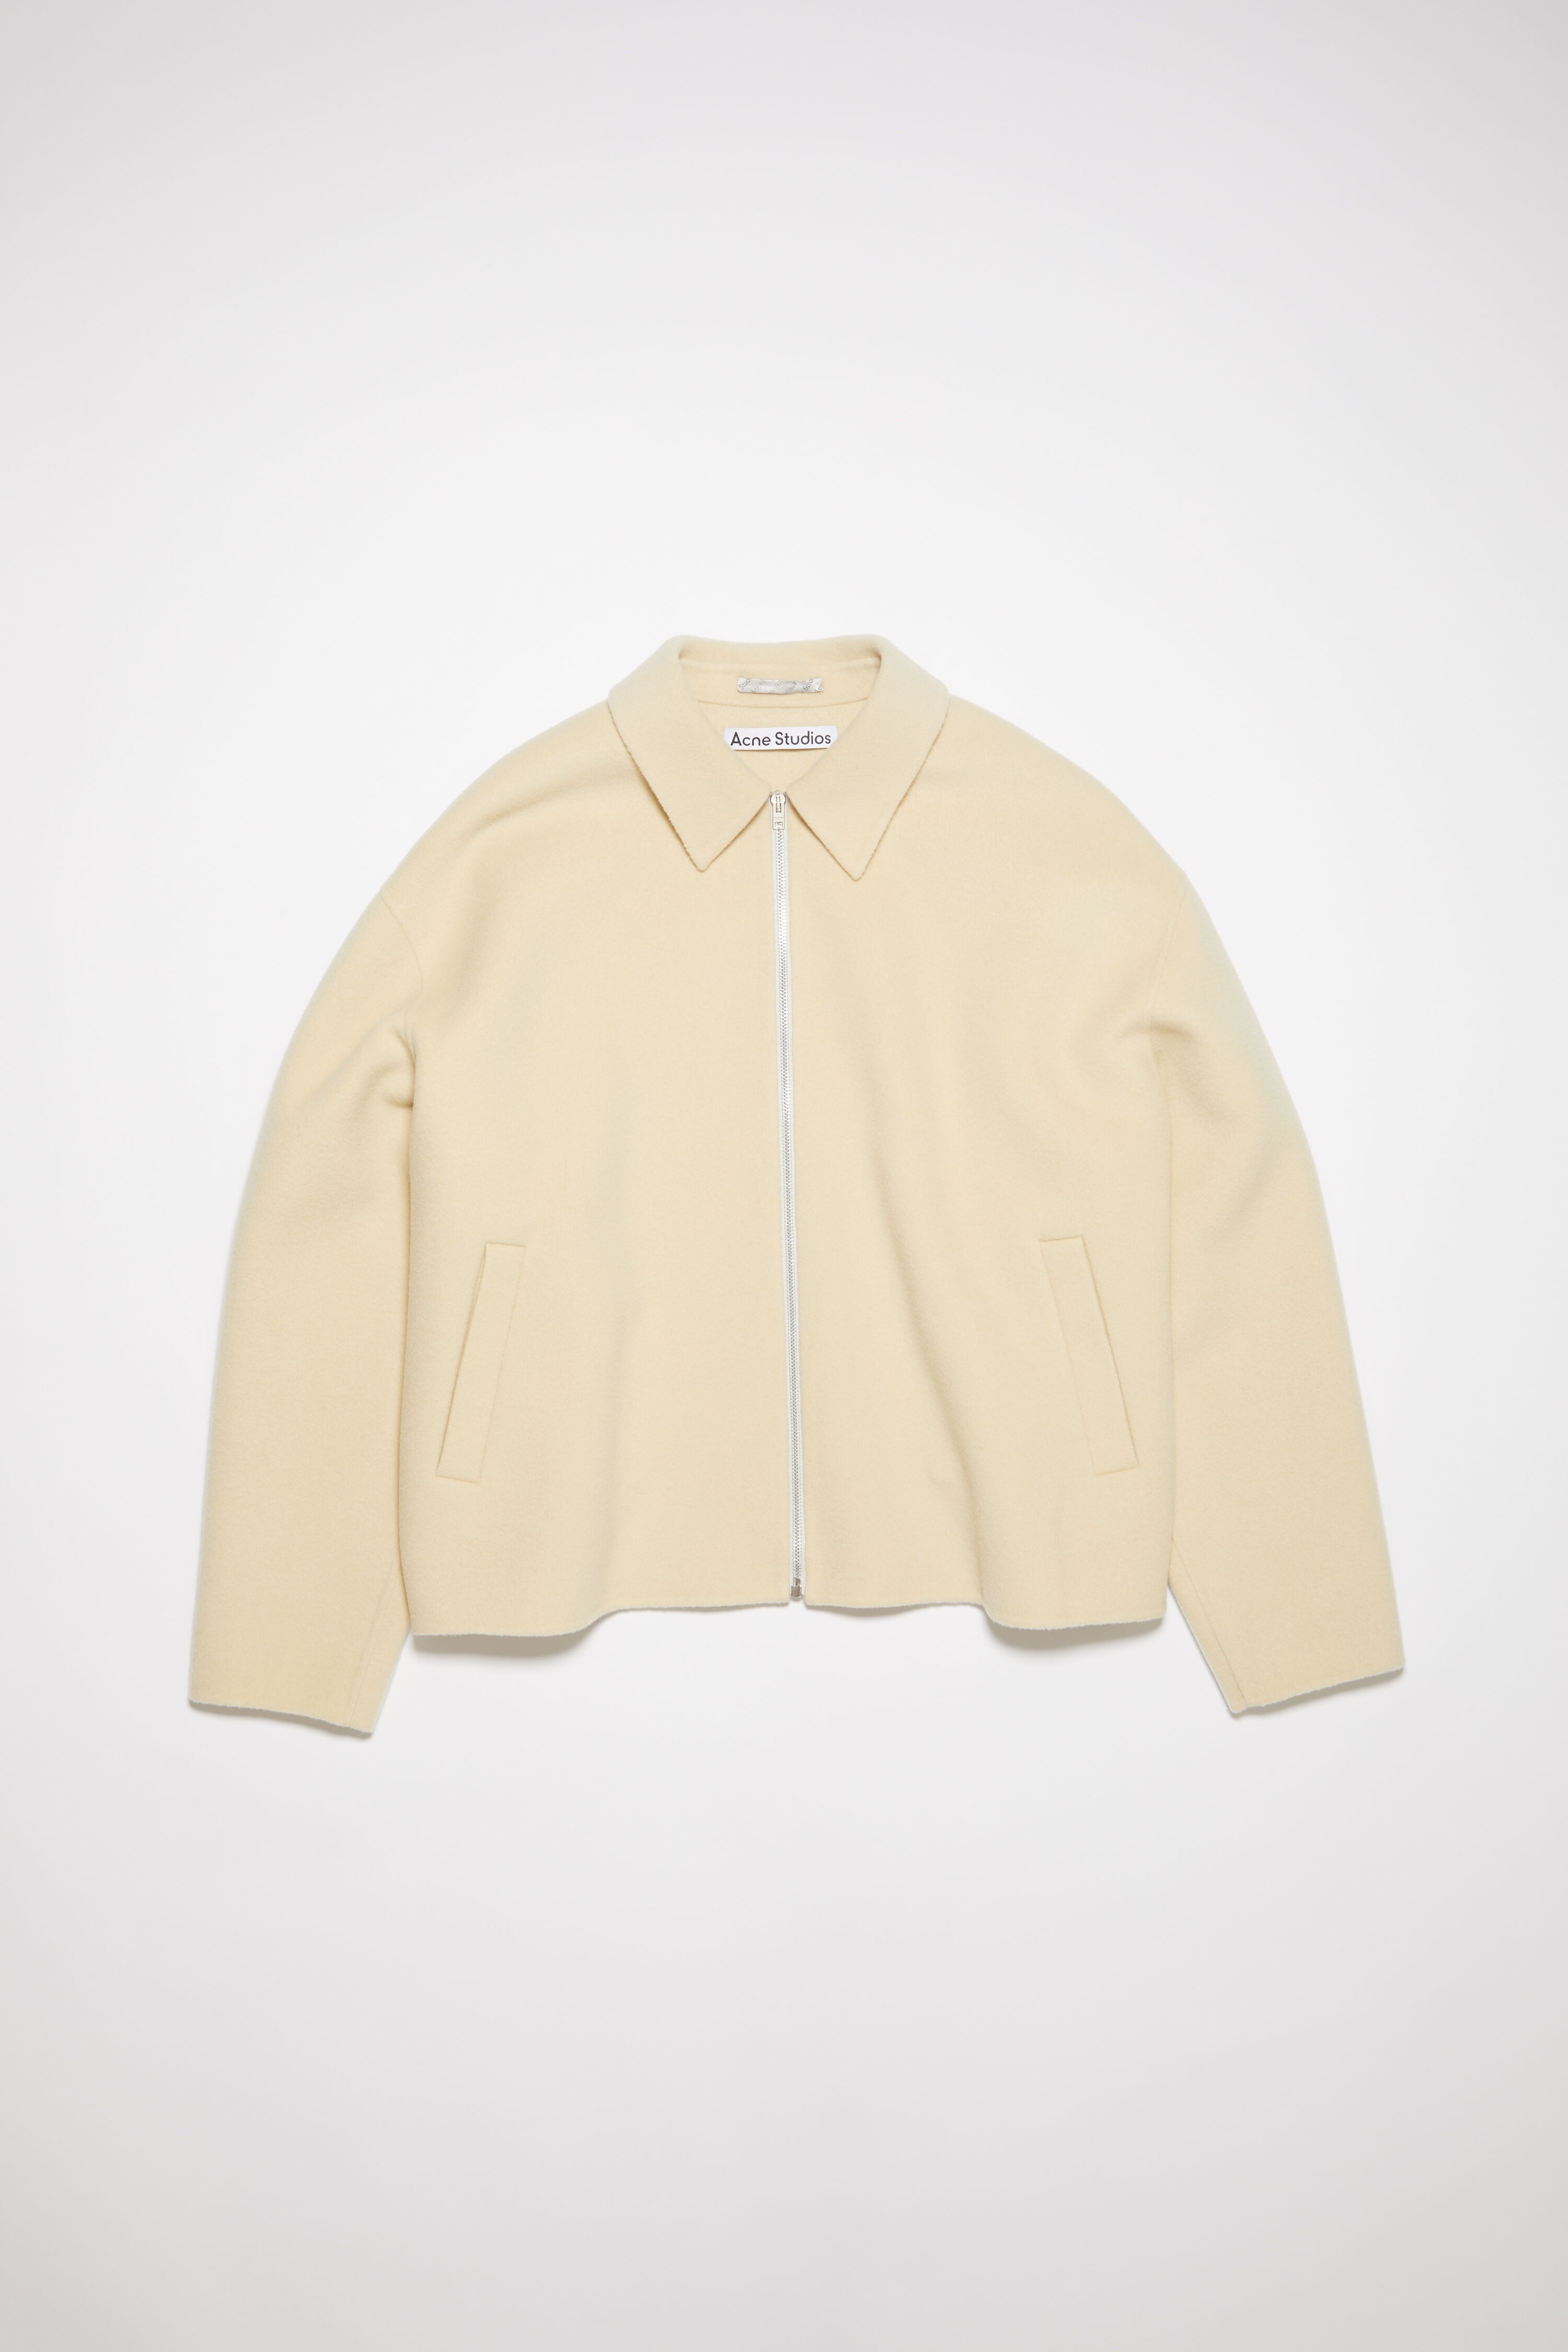 Acne Studios Wool zipper jacket - Oat beige | REVERSIBLE